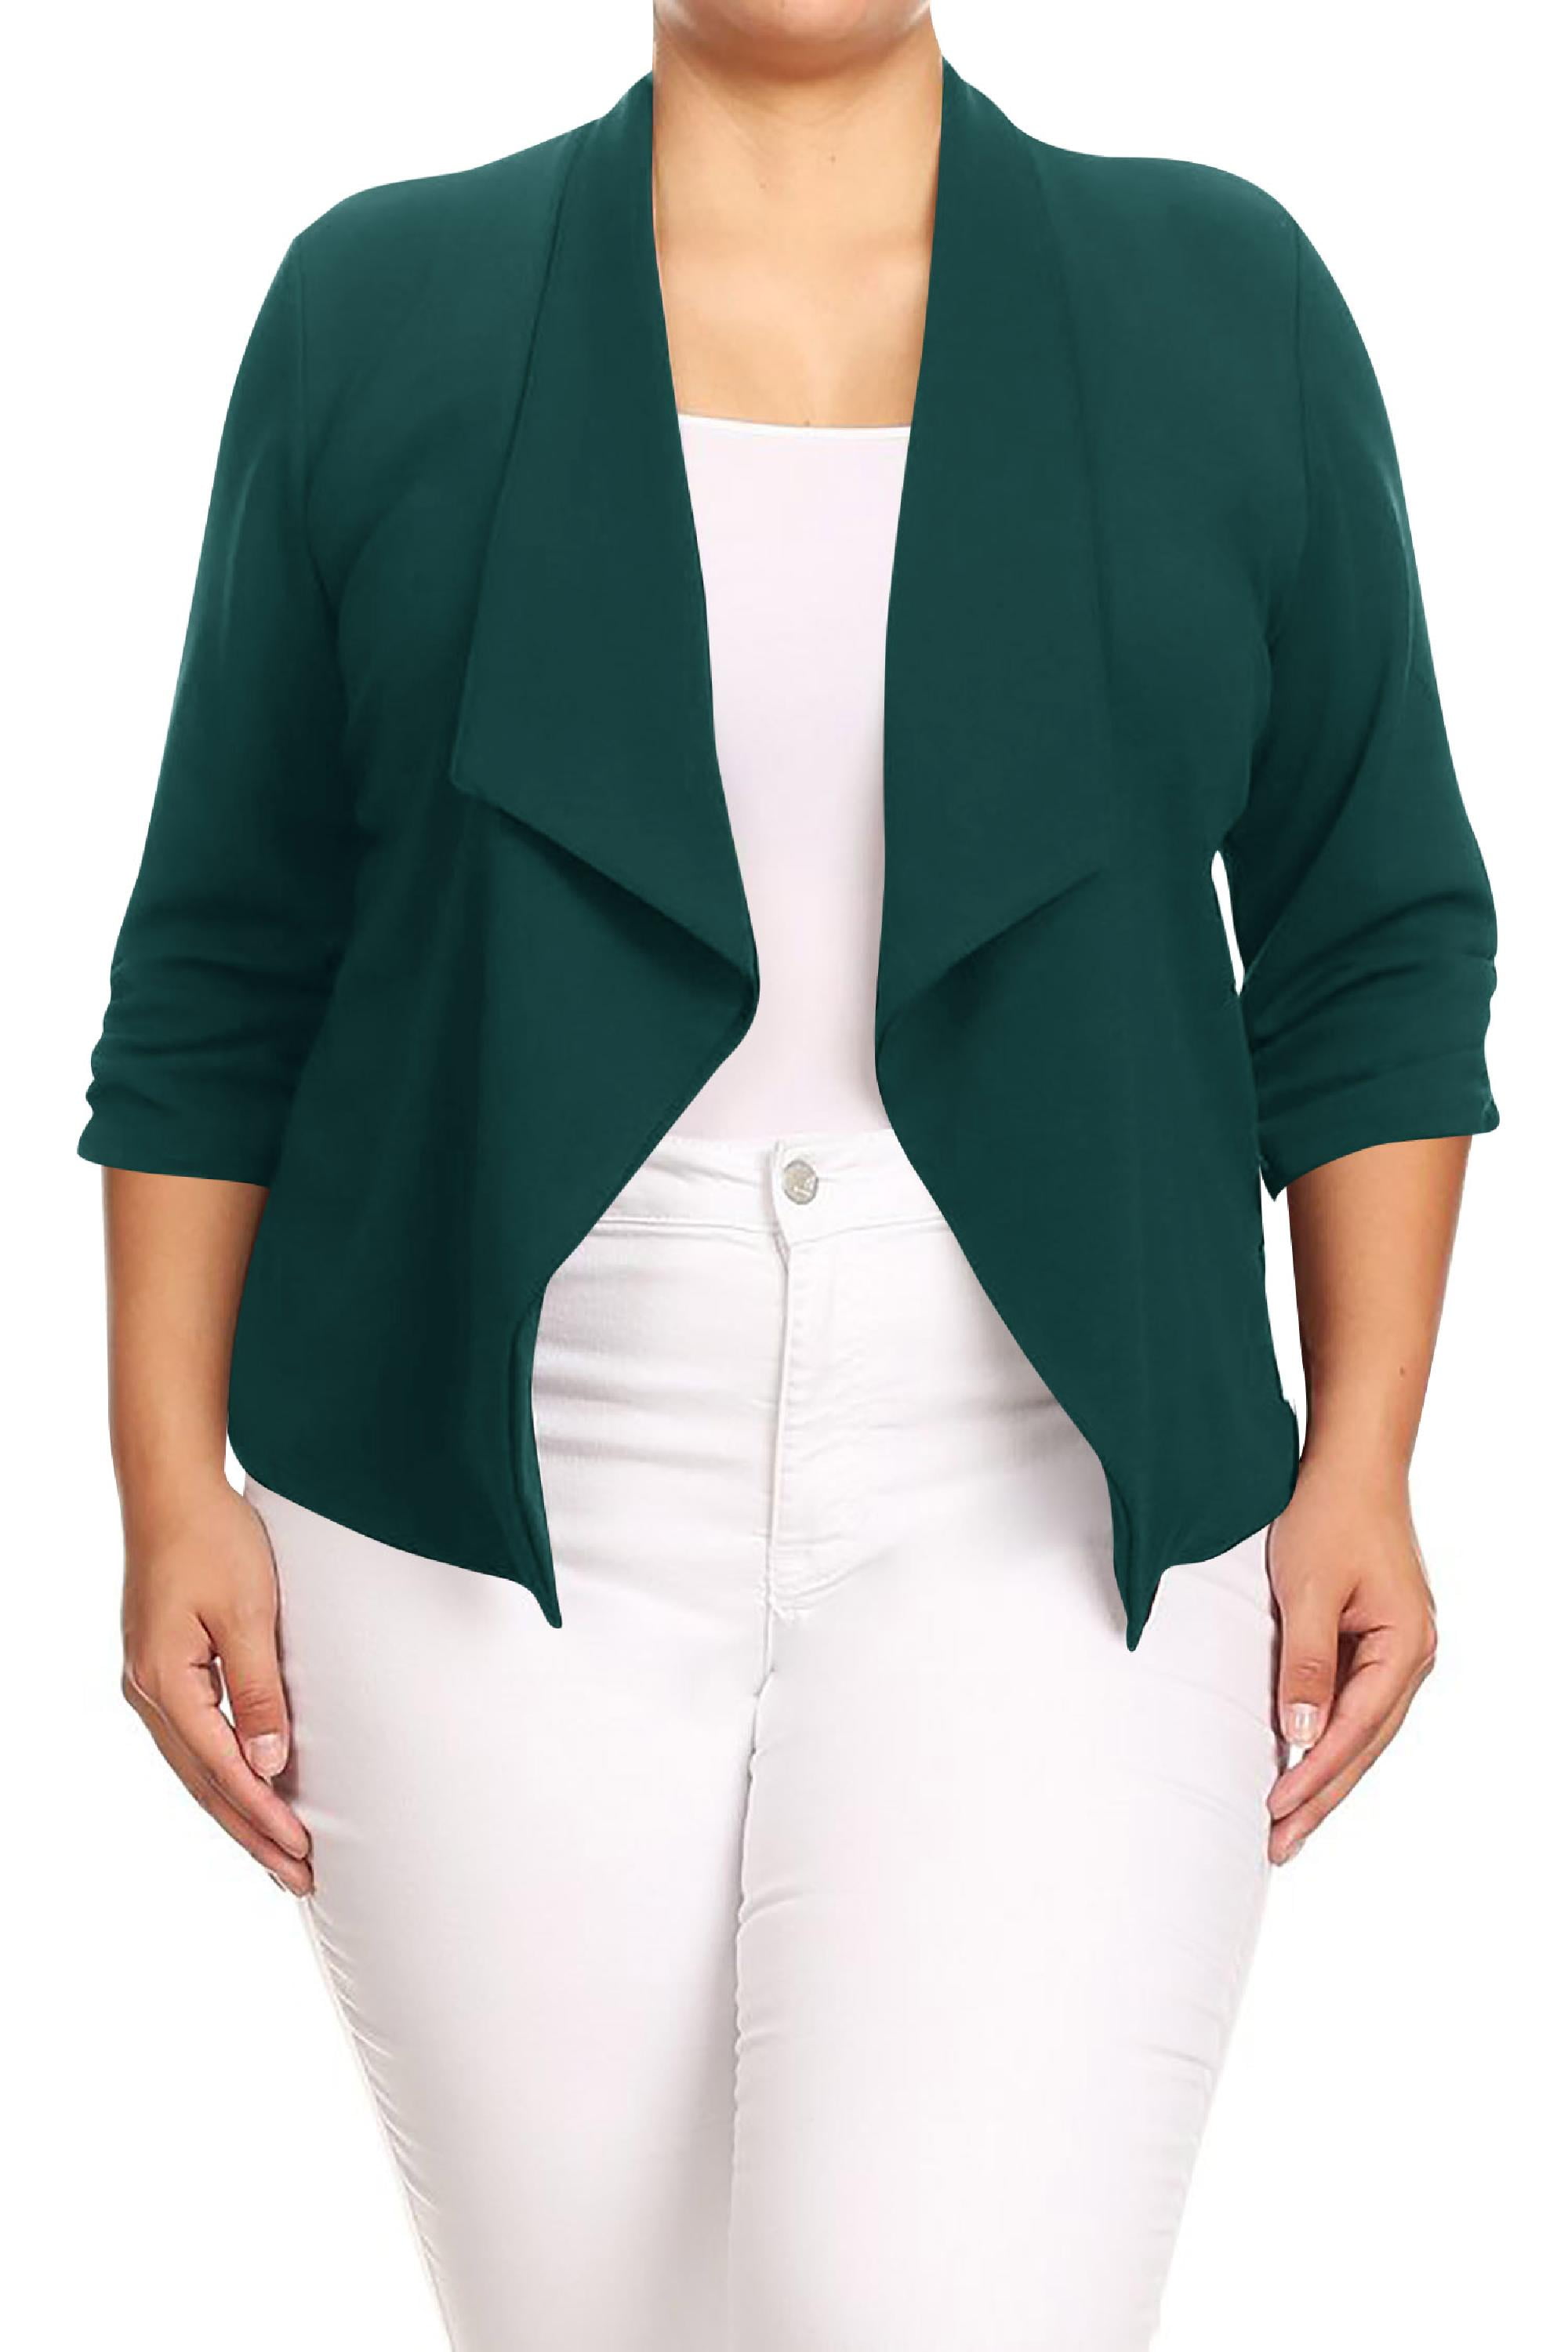 Koning Lear Ingrijpen Cyberruimte Women's Plus Size Open Front Rolled Up 3/4 Sleeves Office Work Wear Solid Blazer  Jacket - Walmart.com